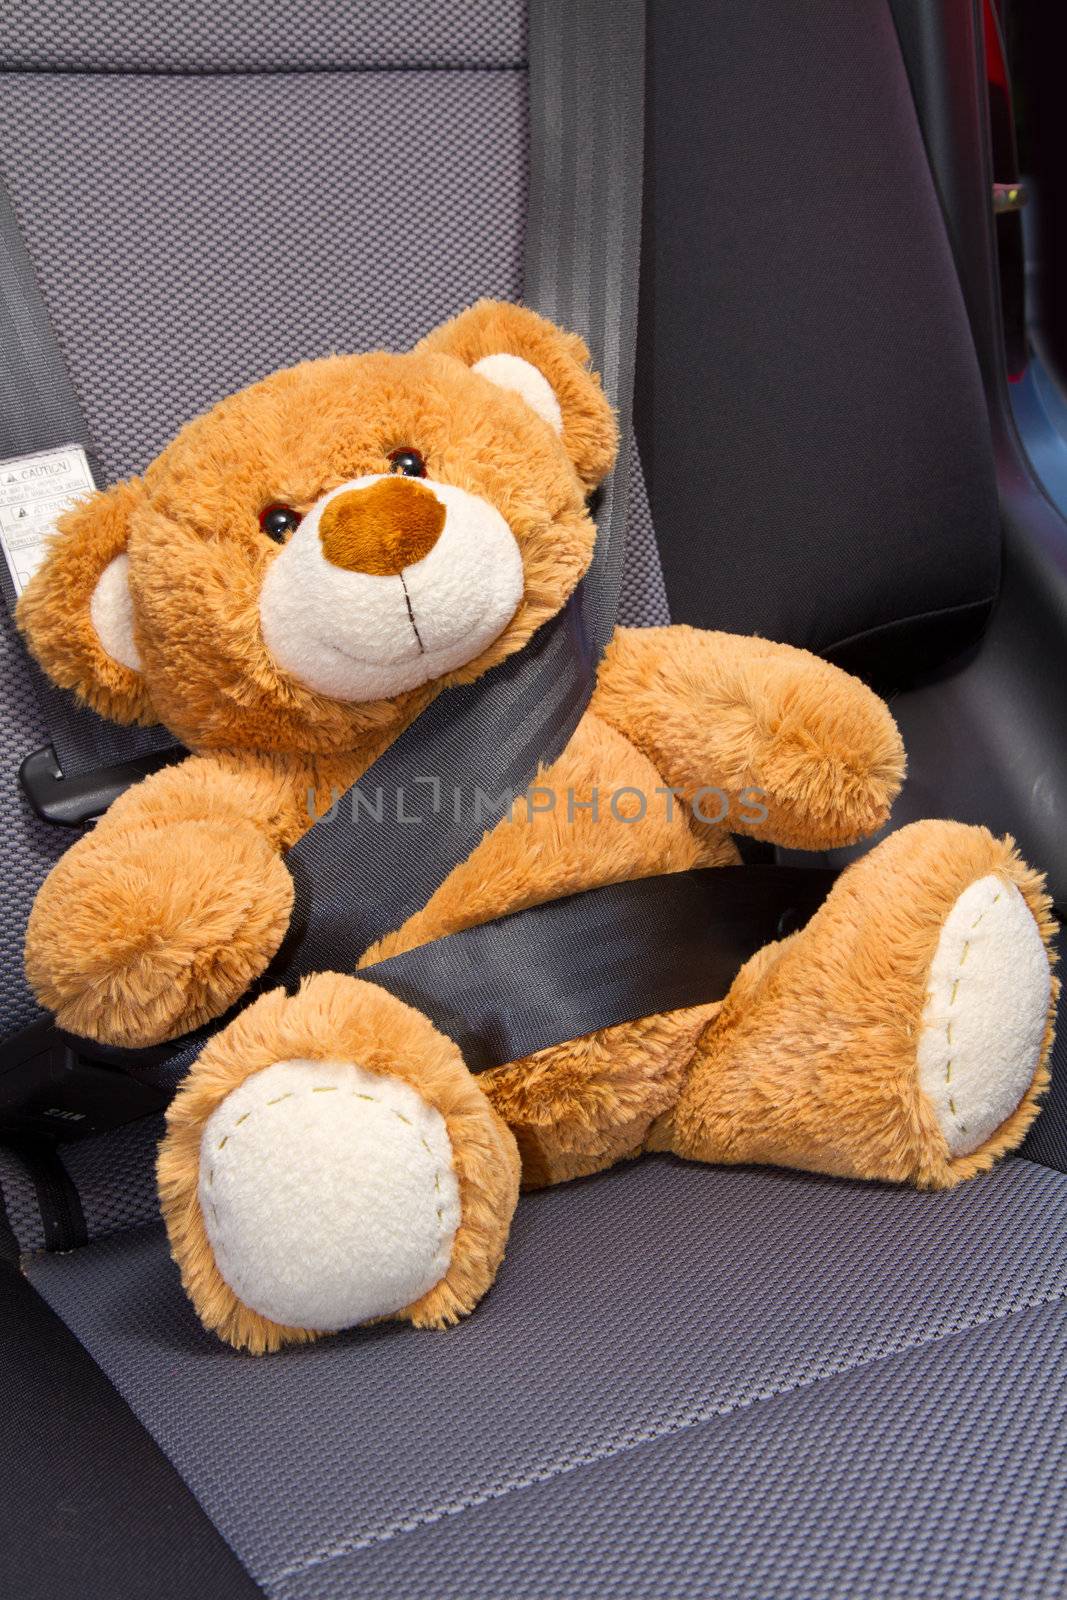 Teddy Bear in a car  by lsantilli